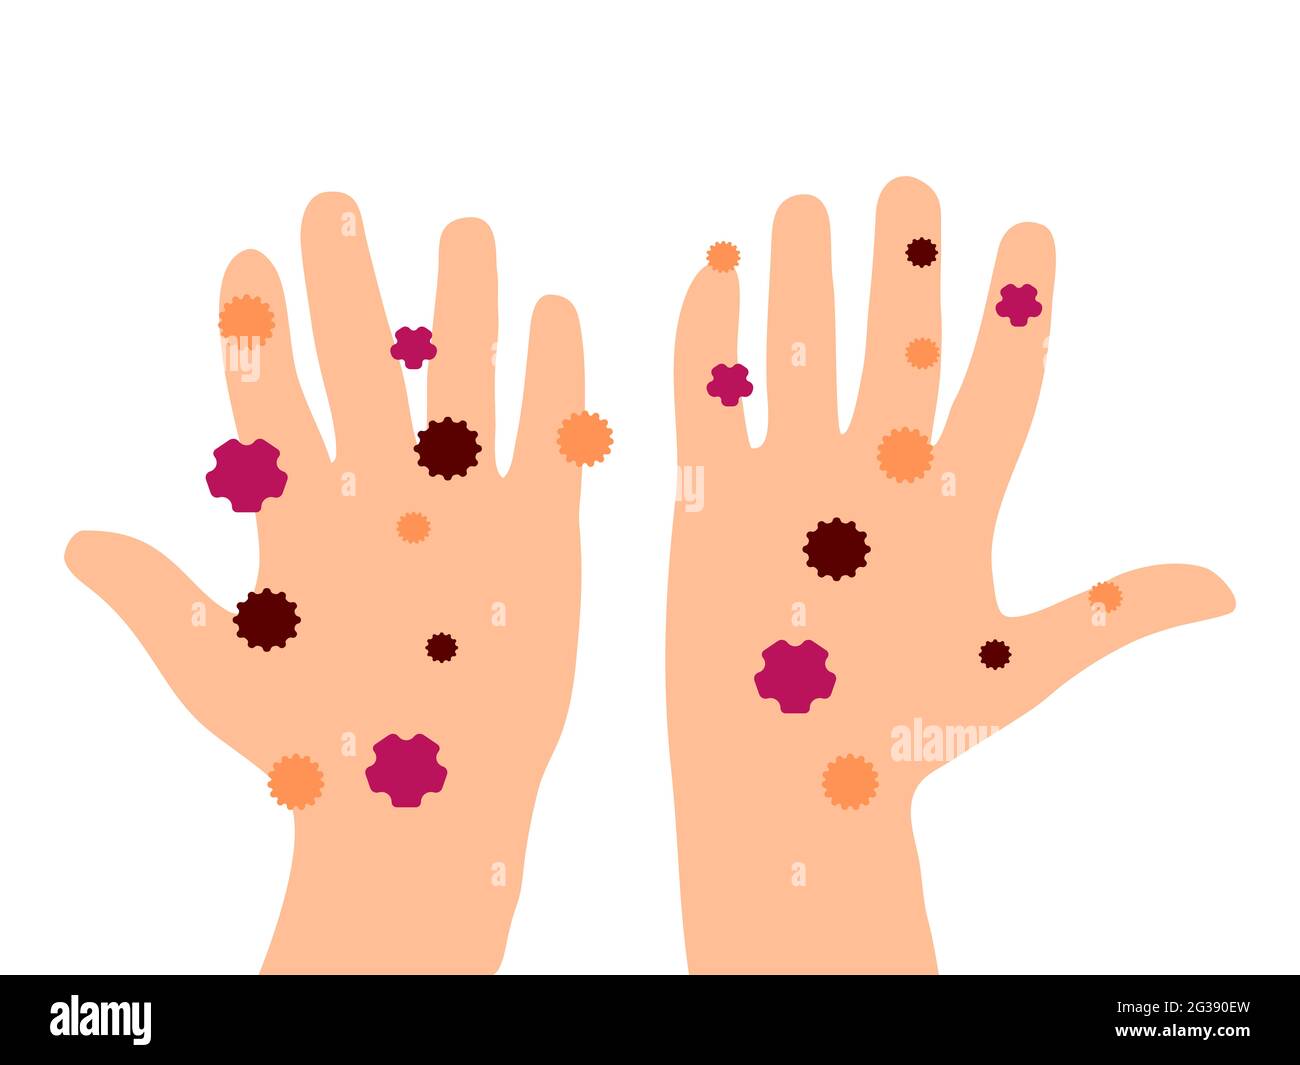 Abbildung: Schmutzige Hände. Hände Handflächen voll mit Bakterien und Viren. Cuacasian weiße Ethnie. Hygienebewusstsein. Stockfoto